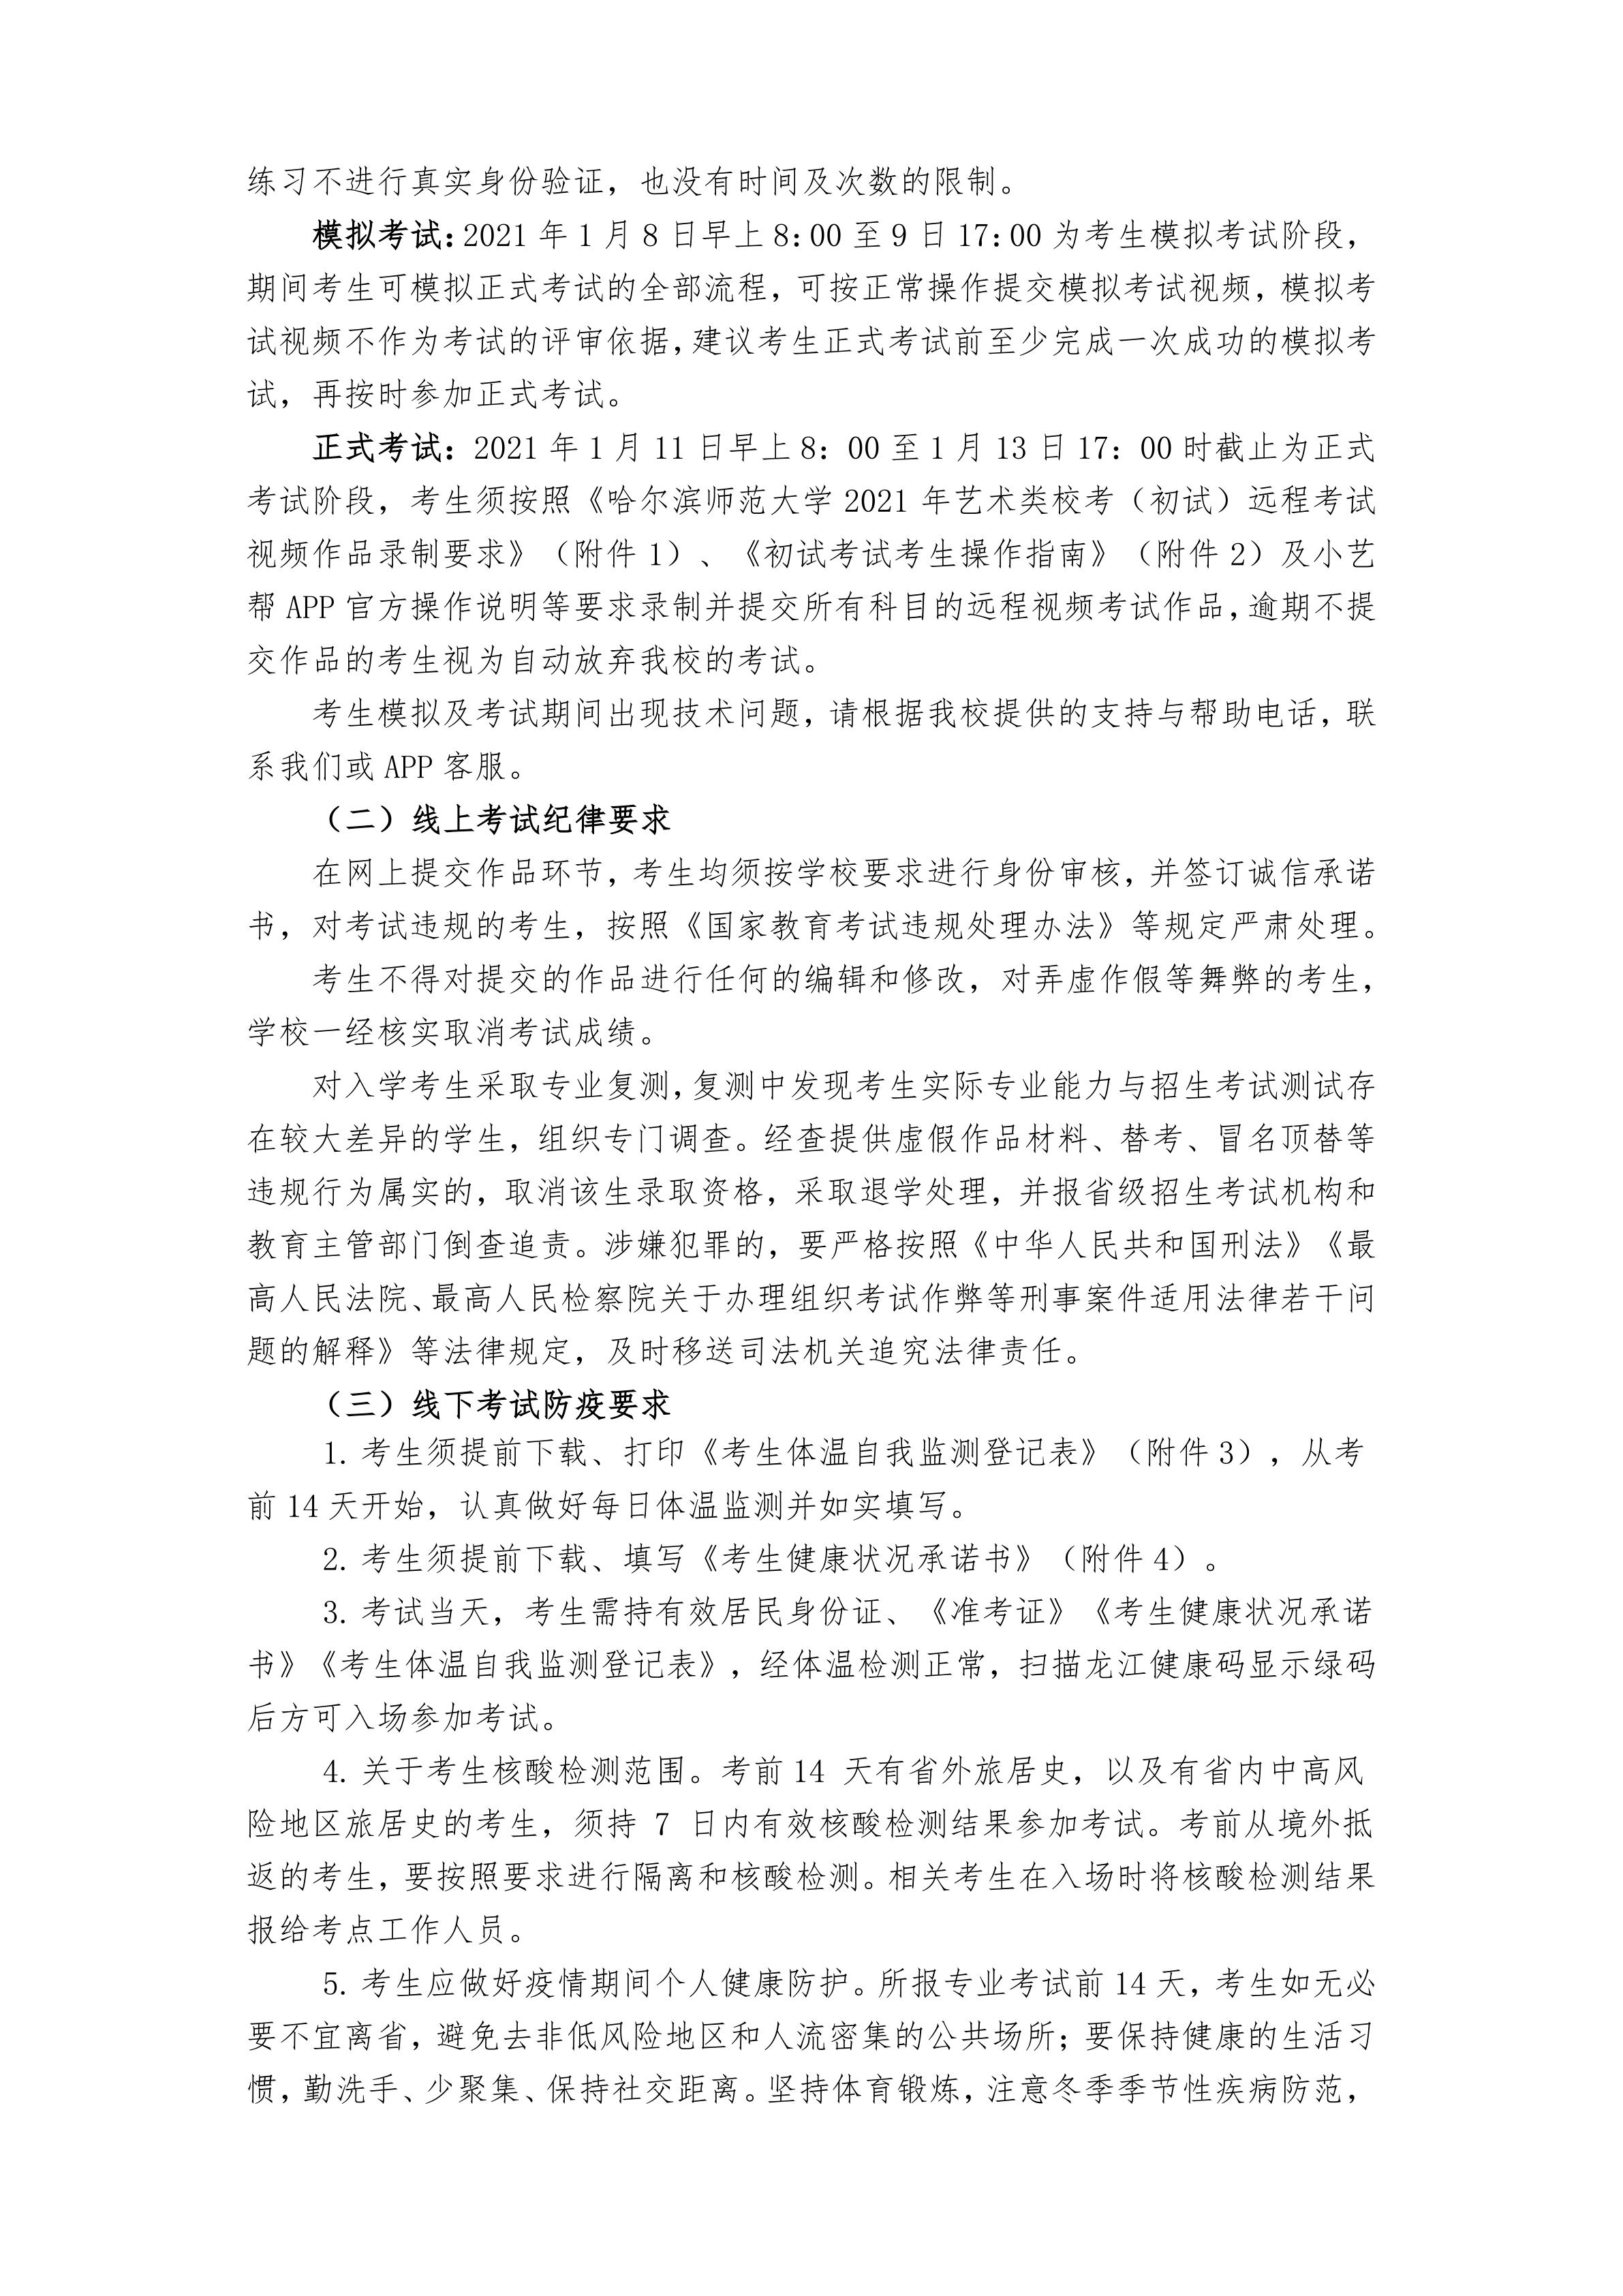 000-关于哈尔滨师范大学2021年在黑龙江省艺术类专业校考的通知_4.png